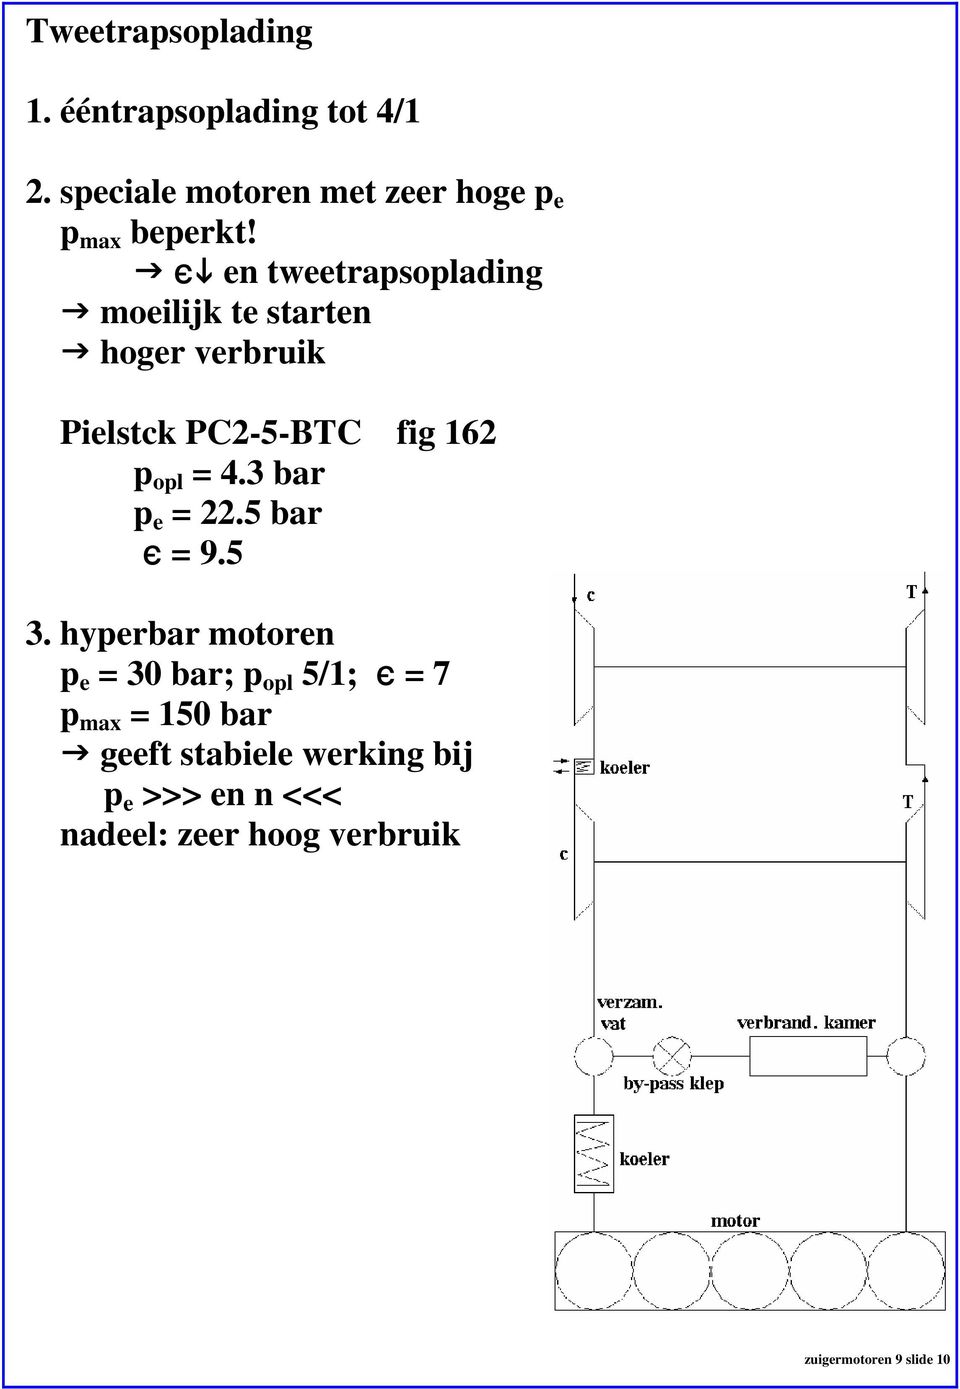 , en tweetrapsoplading moeilijk te starten hoger verbruik Pielstck PC2-5-BTC fig 162 p opl = 4.